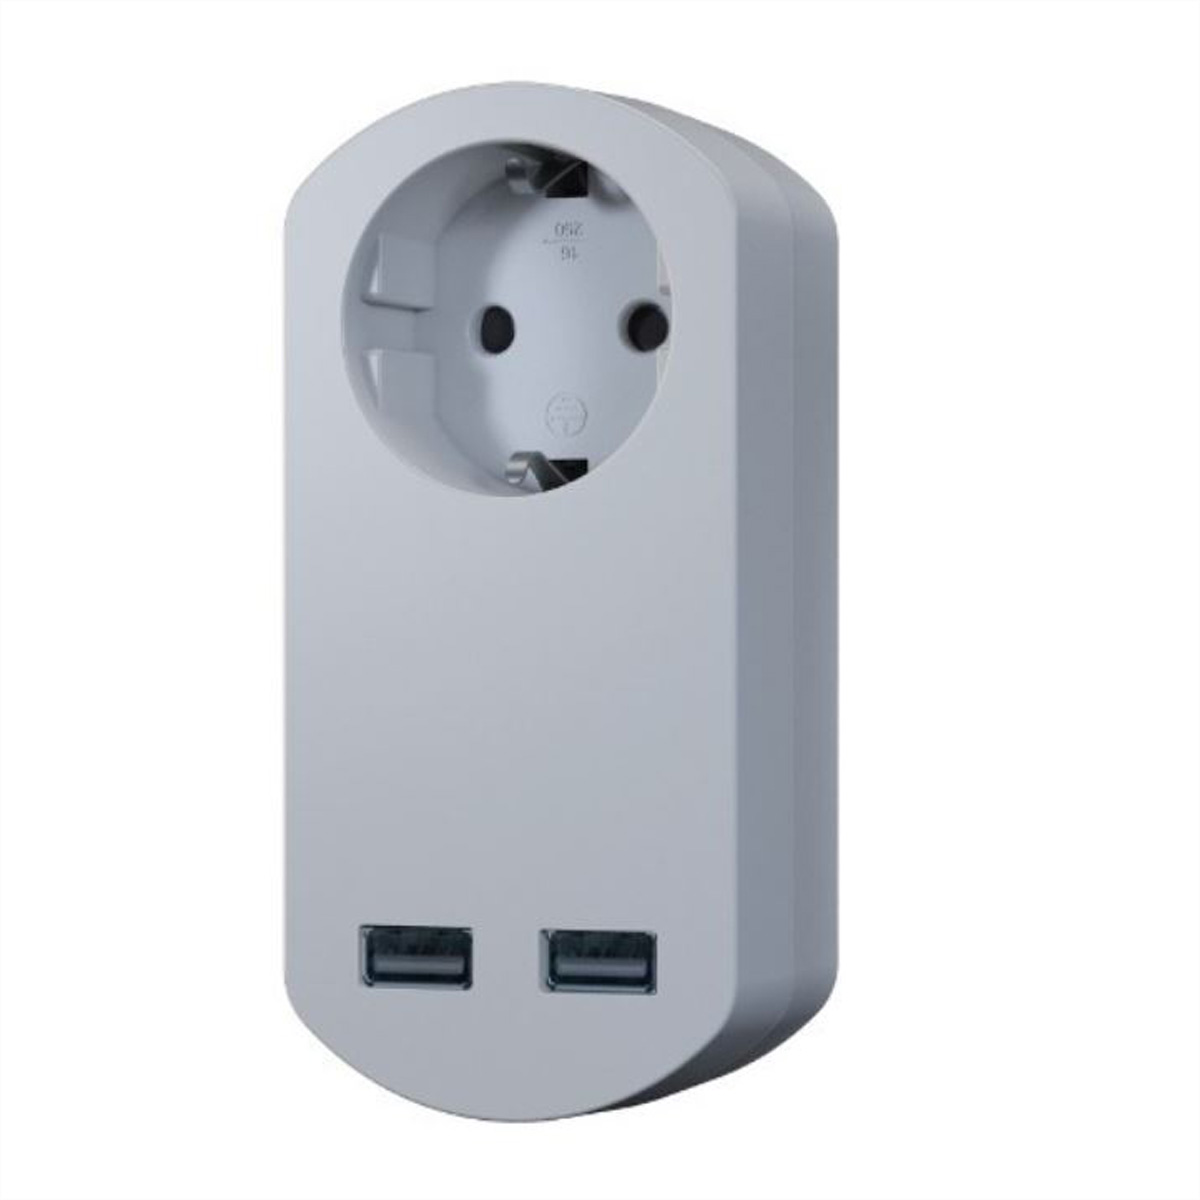 BACHMANN SMART 1x Schutzkontakt, 2x USB Charger, indoor, weiß